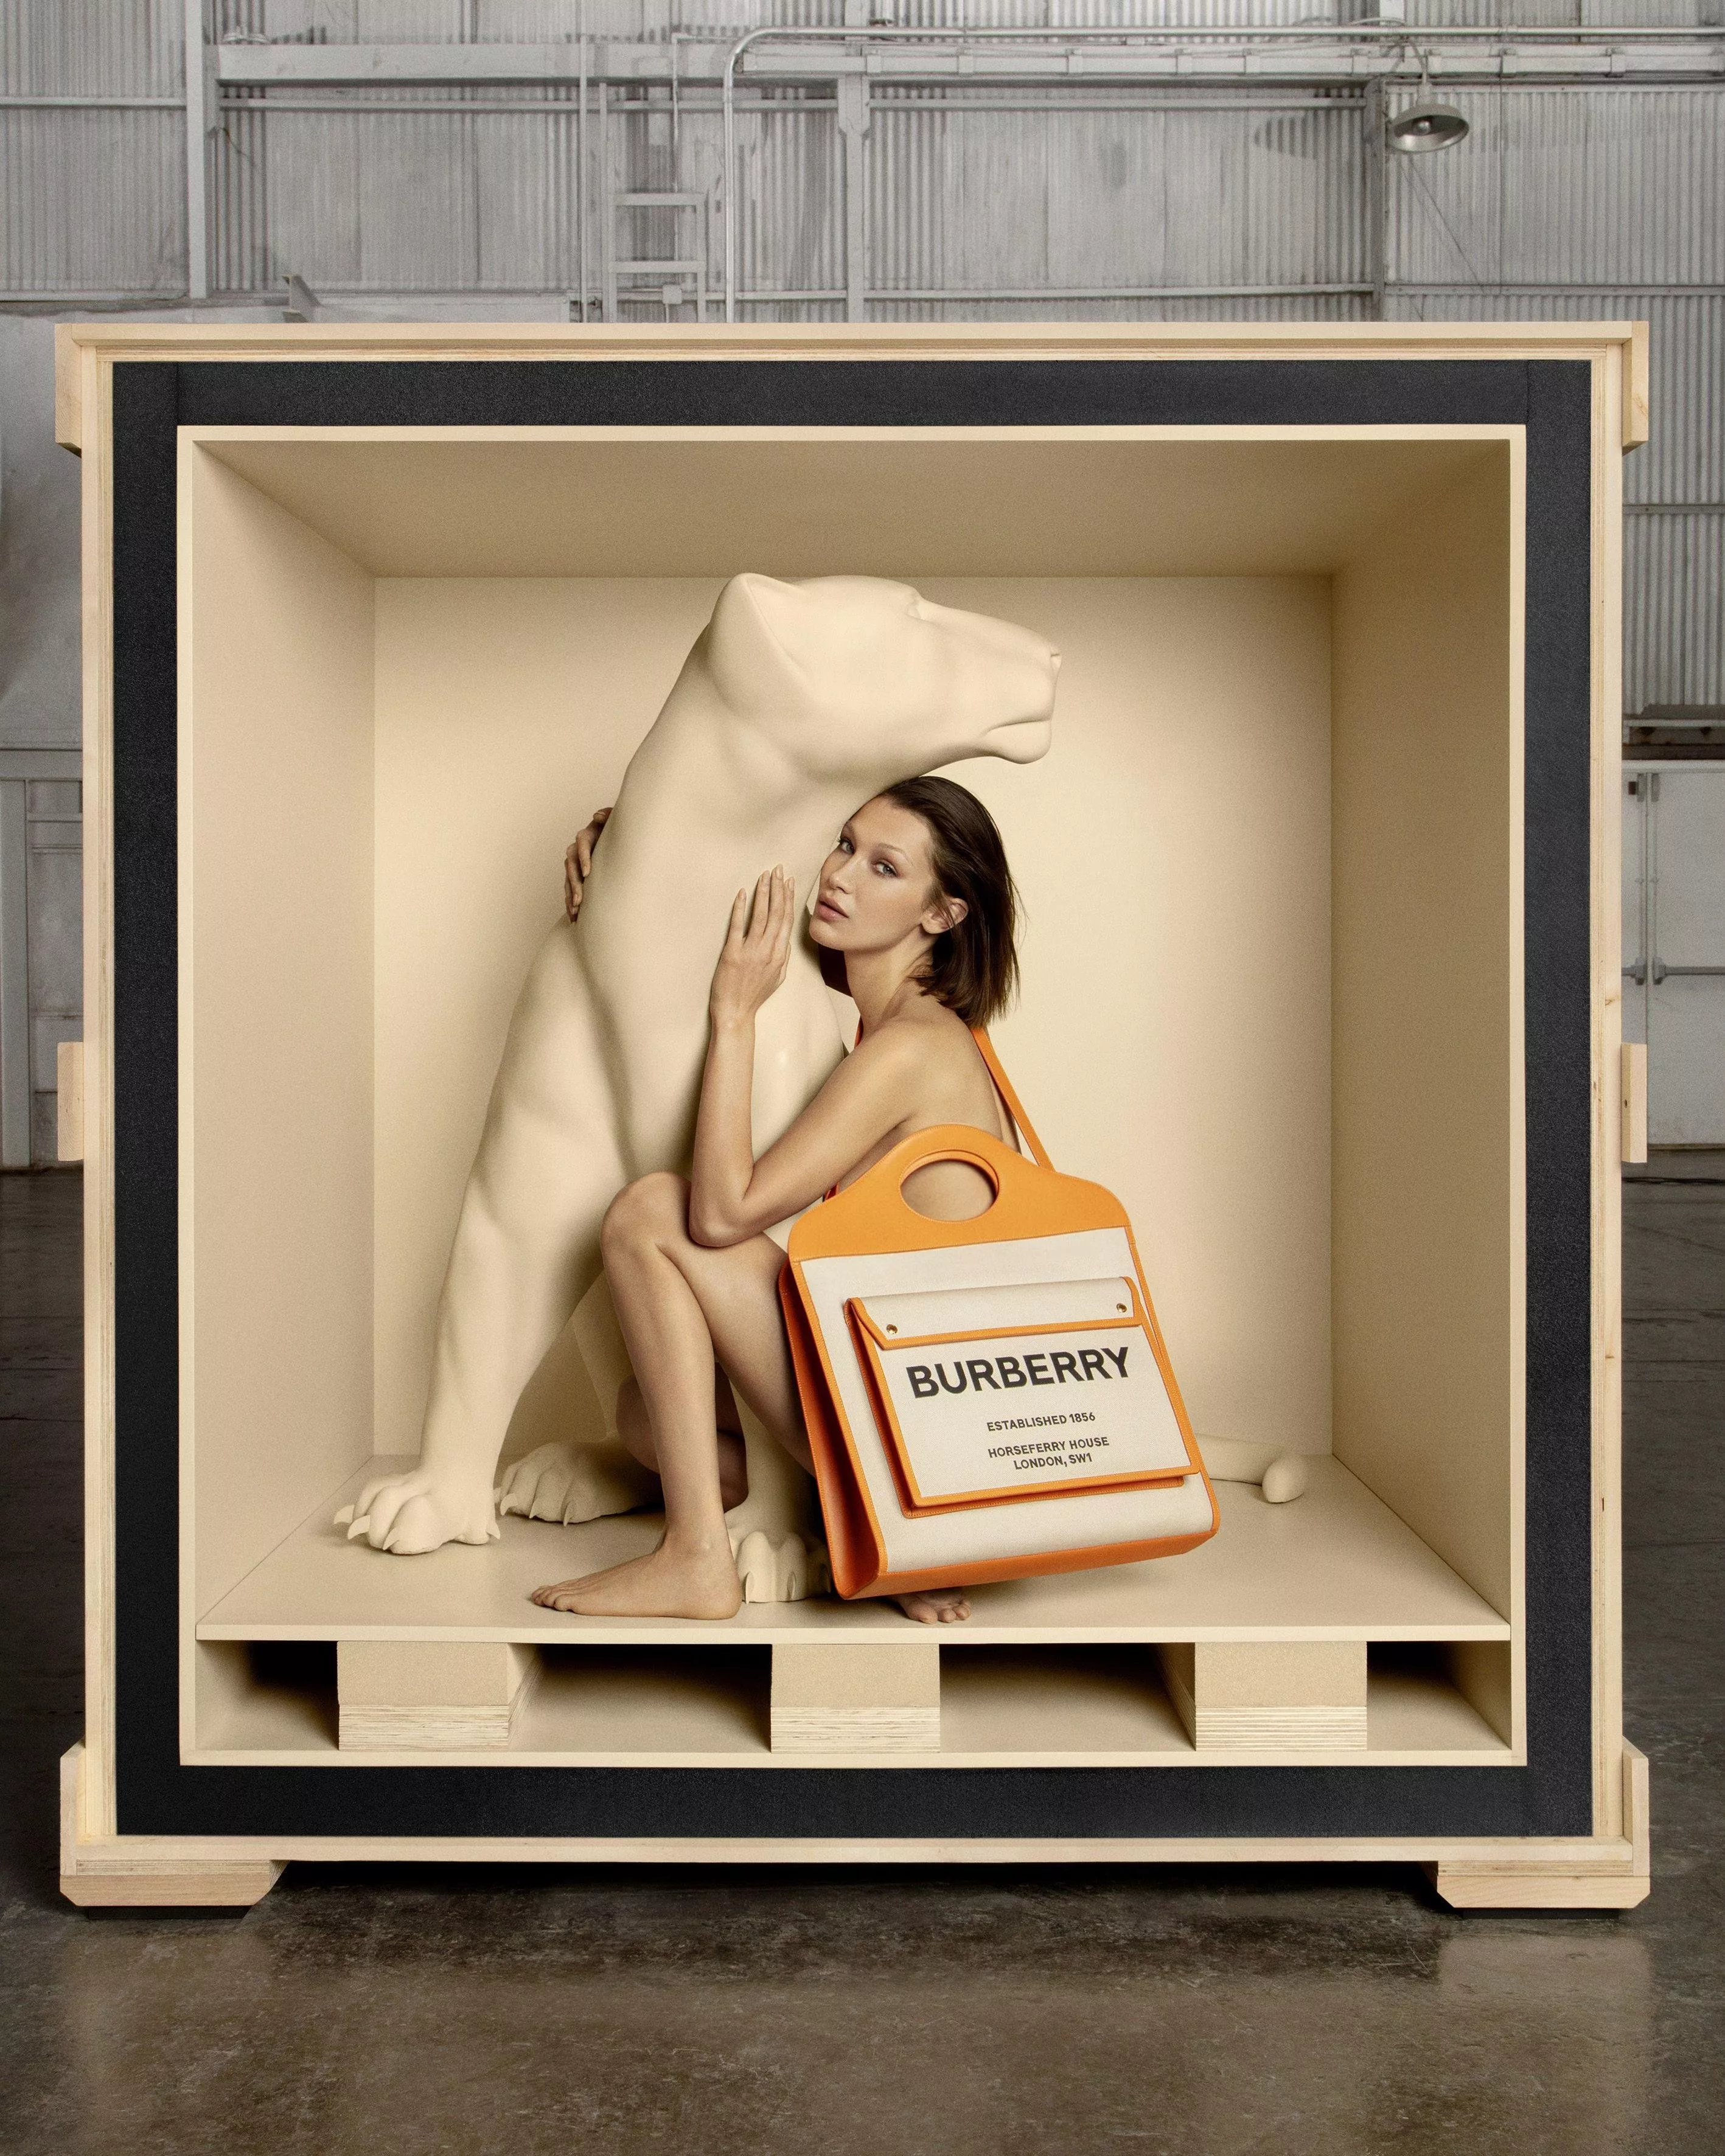 دار Burberry تطلق الحملة الإعلانية لحقيبة Pocket من بطولة Bella Hadid